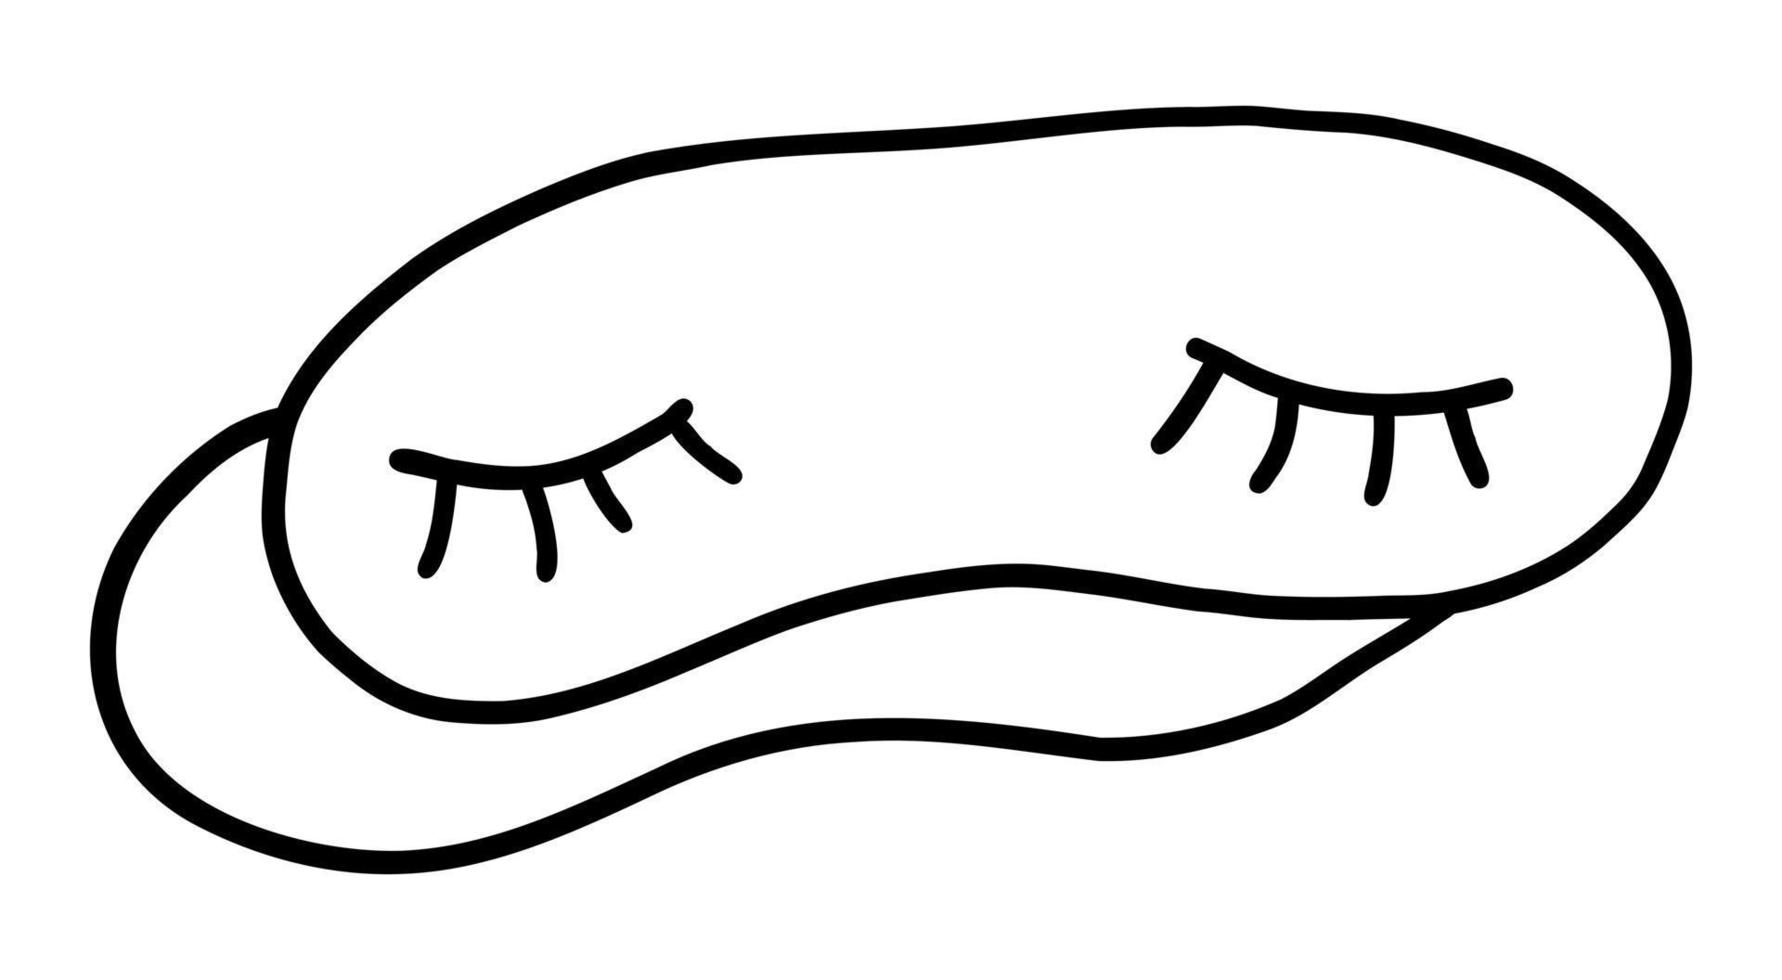 illustrazione vettoriale di una benda per dormire isolata su uno sfondo bianco. scarabocchio disegnando a mano